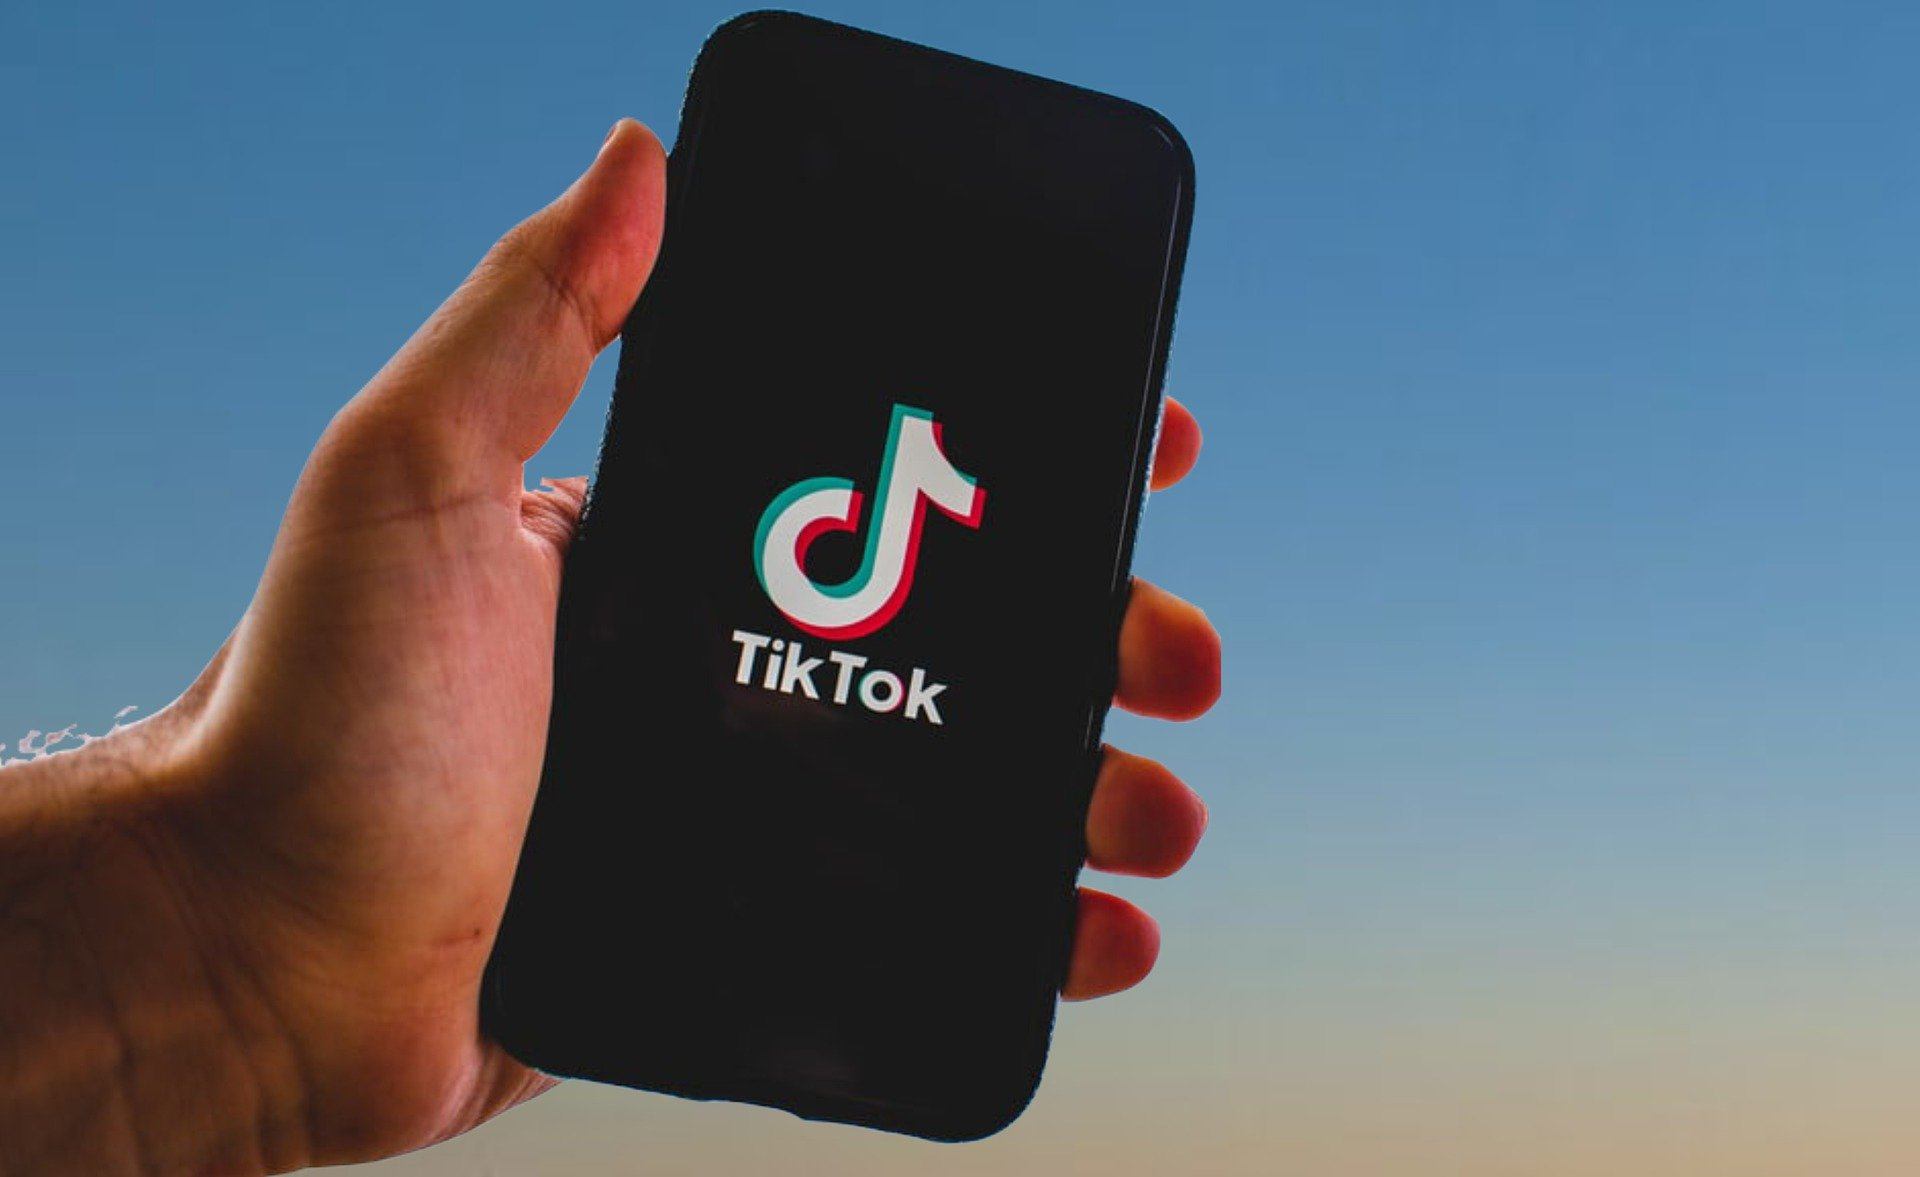 TikTok Business: saiba como criar sua conta para anunciar